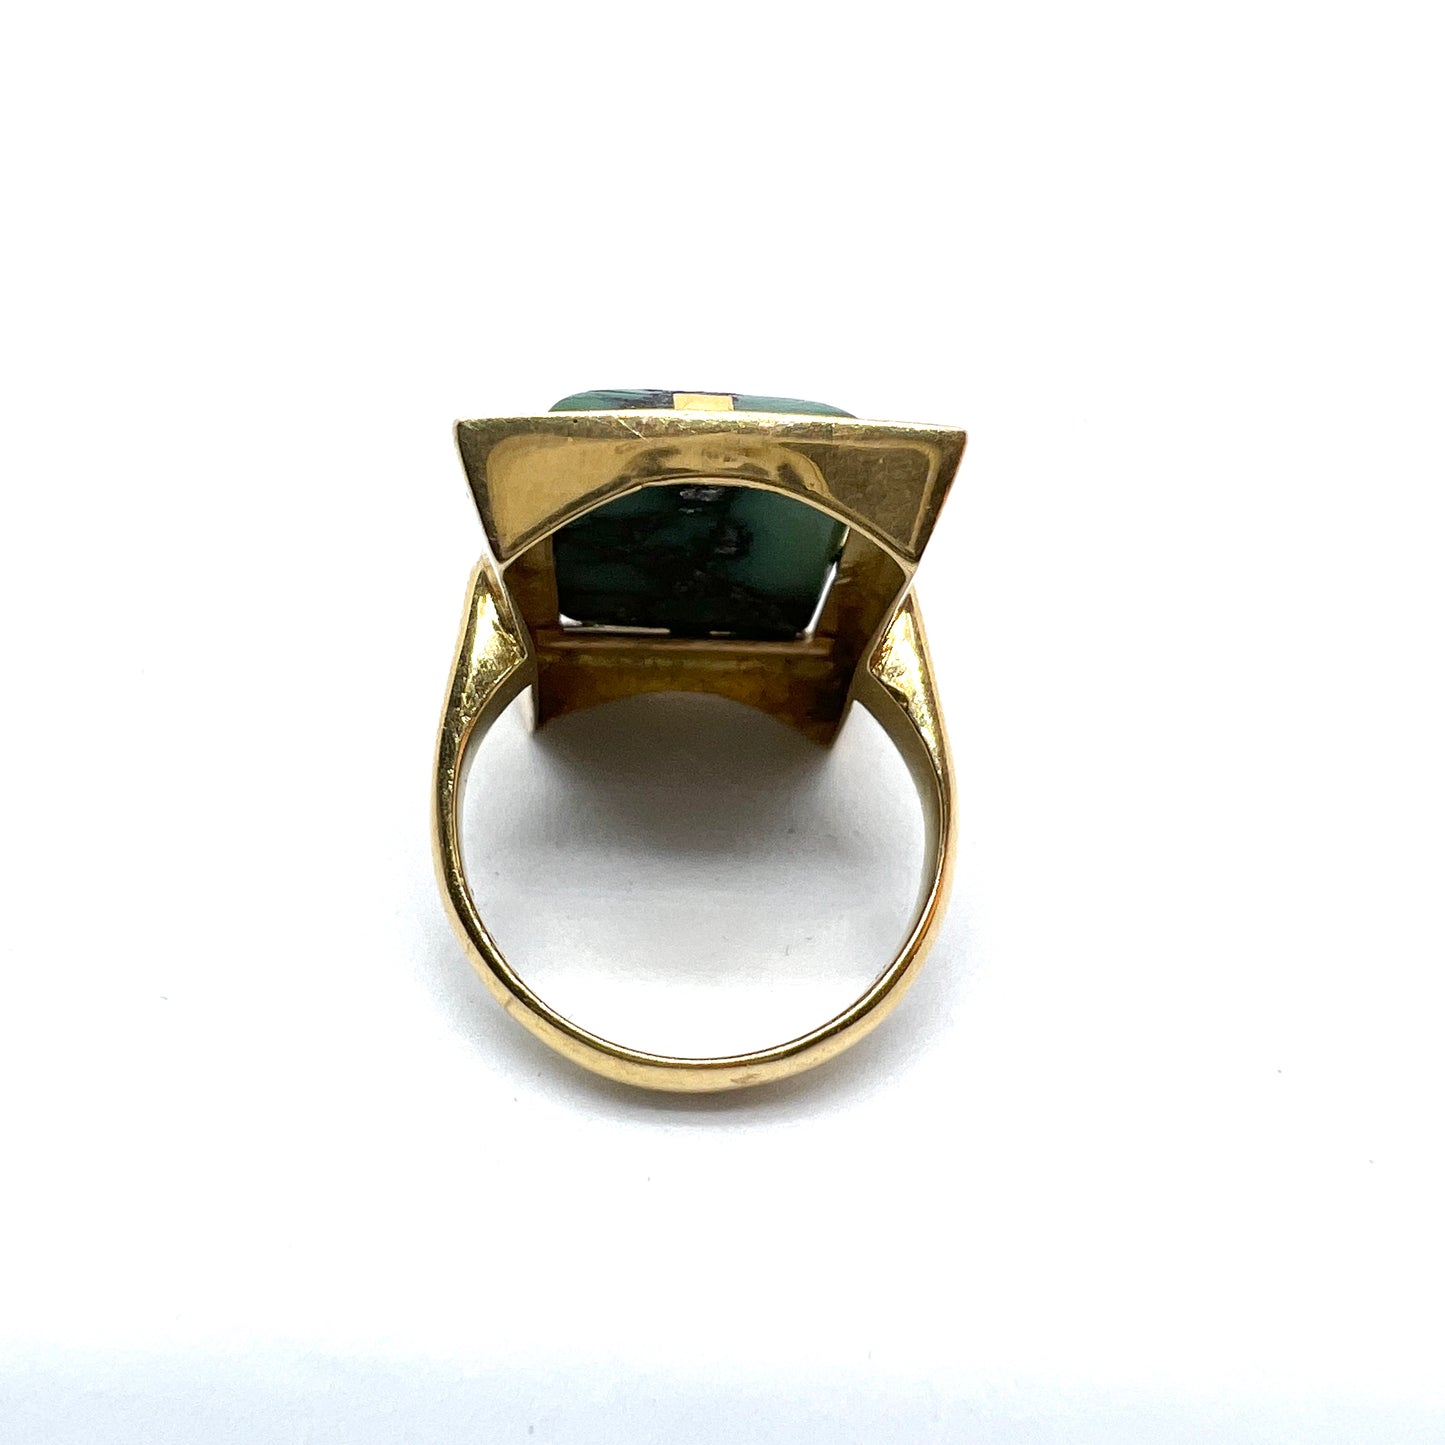 Bergströms, Sweden 1947, Vintage 18k Gold Turquoise Ring. 6.5 gram